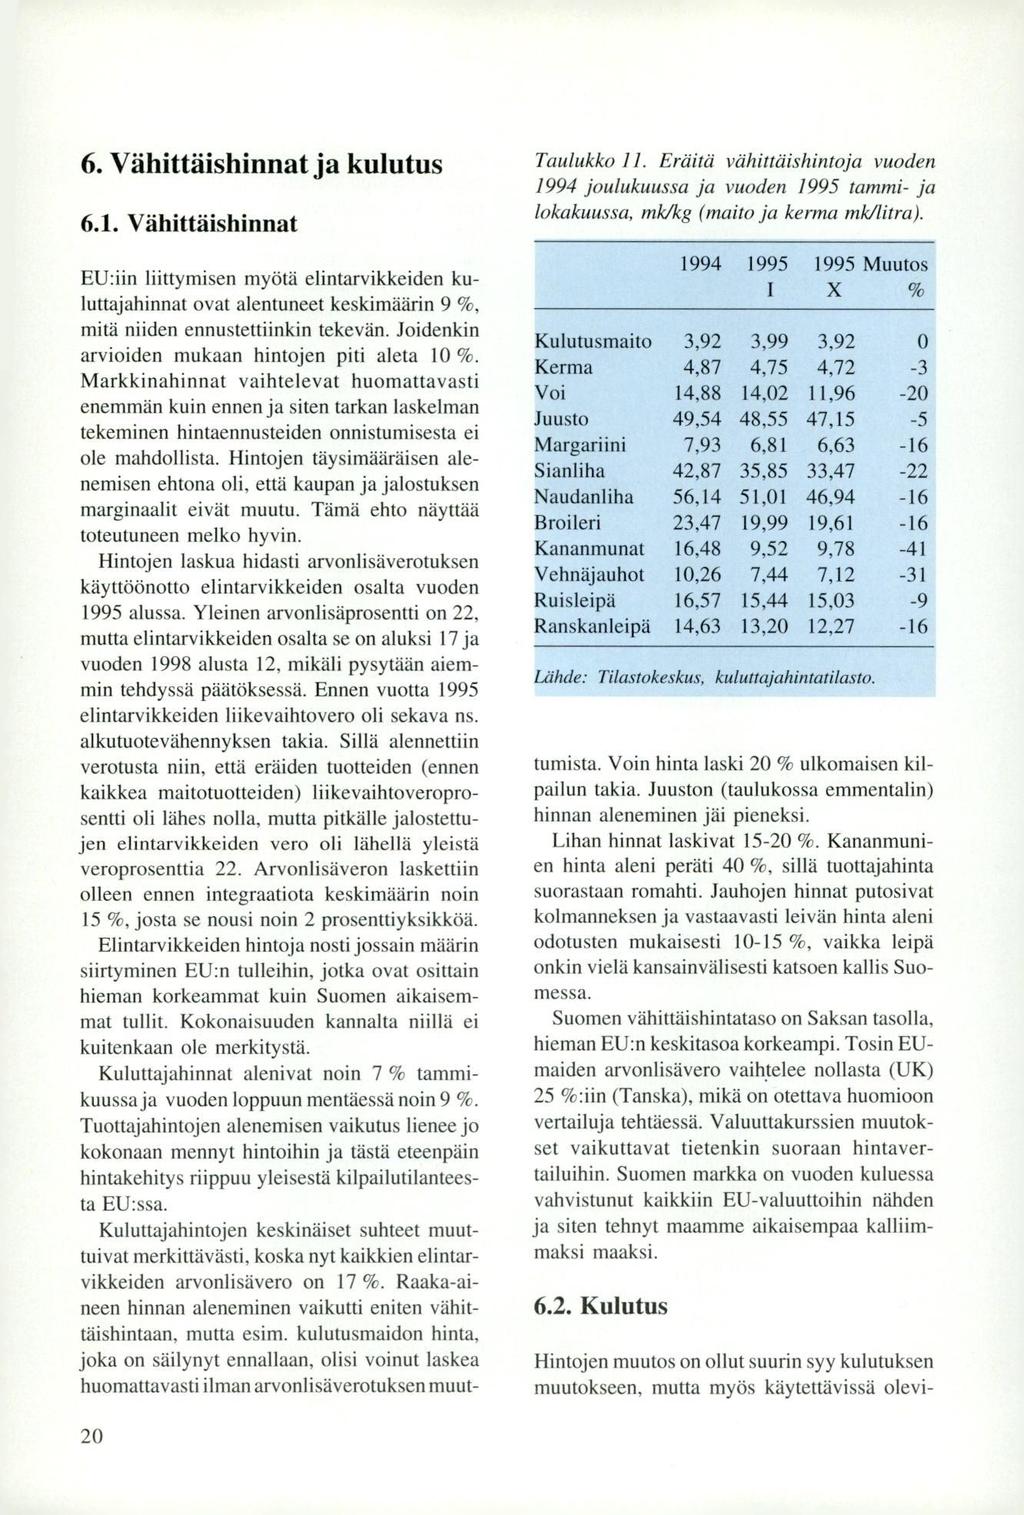 6, Vähittäishinnat ja kulutus Taulukko 11. Eräitä vähittäishintoja vuoden 1994 joulukuussa ja vuoden 1995 tammi- ja lokakuussa, mk/kg (maito ja kerma mk/litra). 6.1. Vähittäishinnat EU:iin liittymisen myötä elintarvikkeiden kuluttajahinnat ovat alentuneet keskimäärin 9 %, mitä niiden ennustettiinkin tekevän.